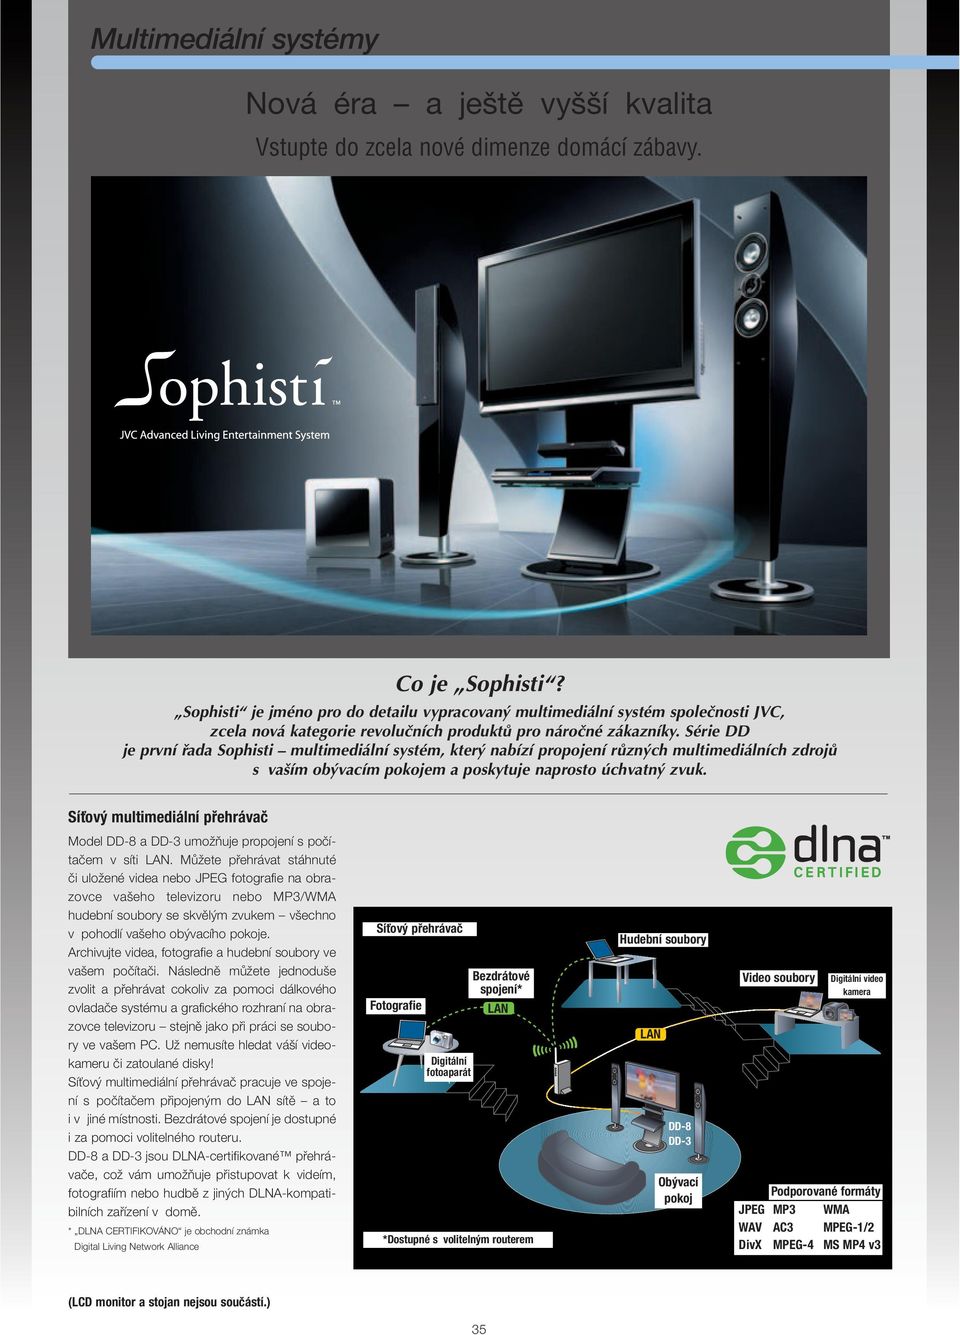 Série DD je první řada Sophisti multimediální systém, který nabízí propojení různých multimediálních zdrojů s vaším obývacím pokojem a poskytuje naprosto úchvatný zvuk.